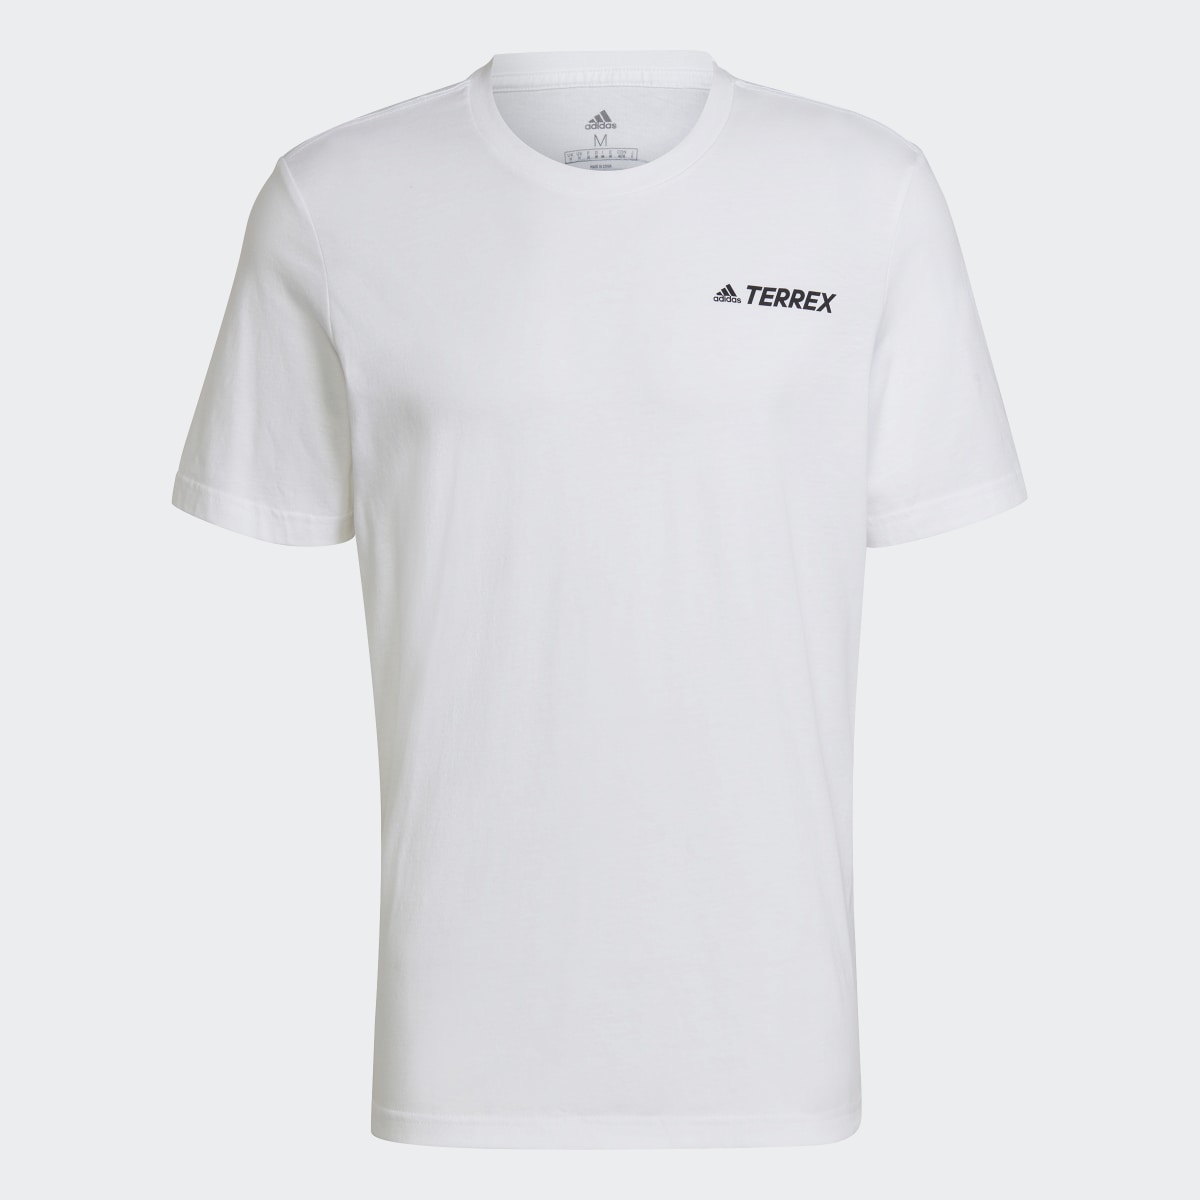 Adidas Camiseta Terrex Mountain Graphic. 5